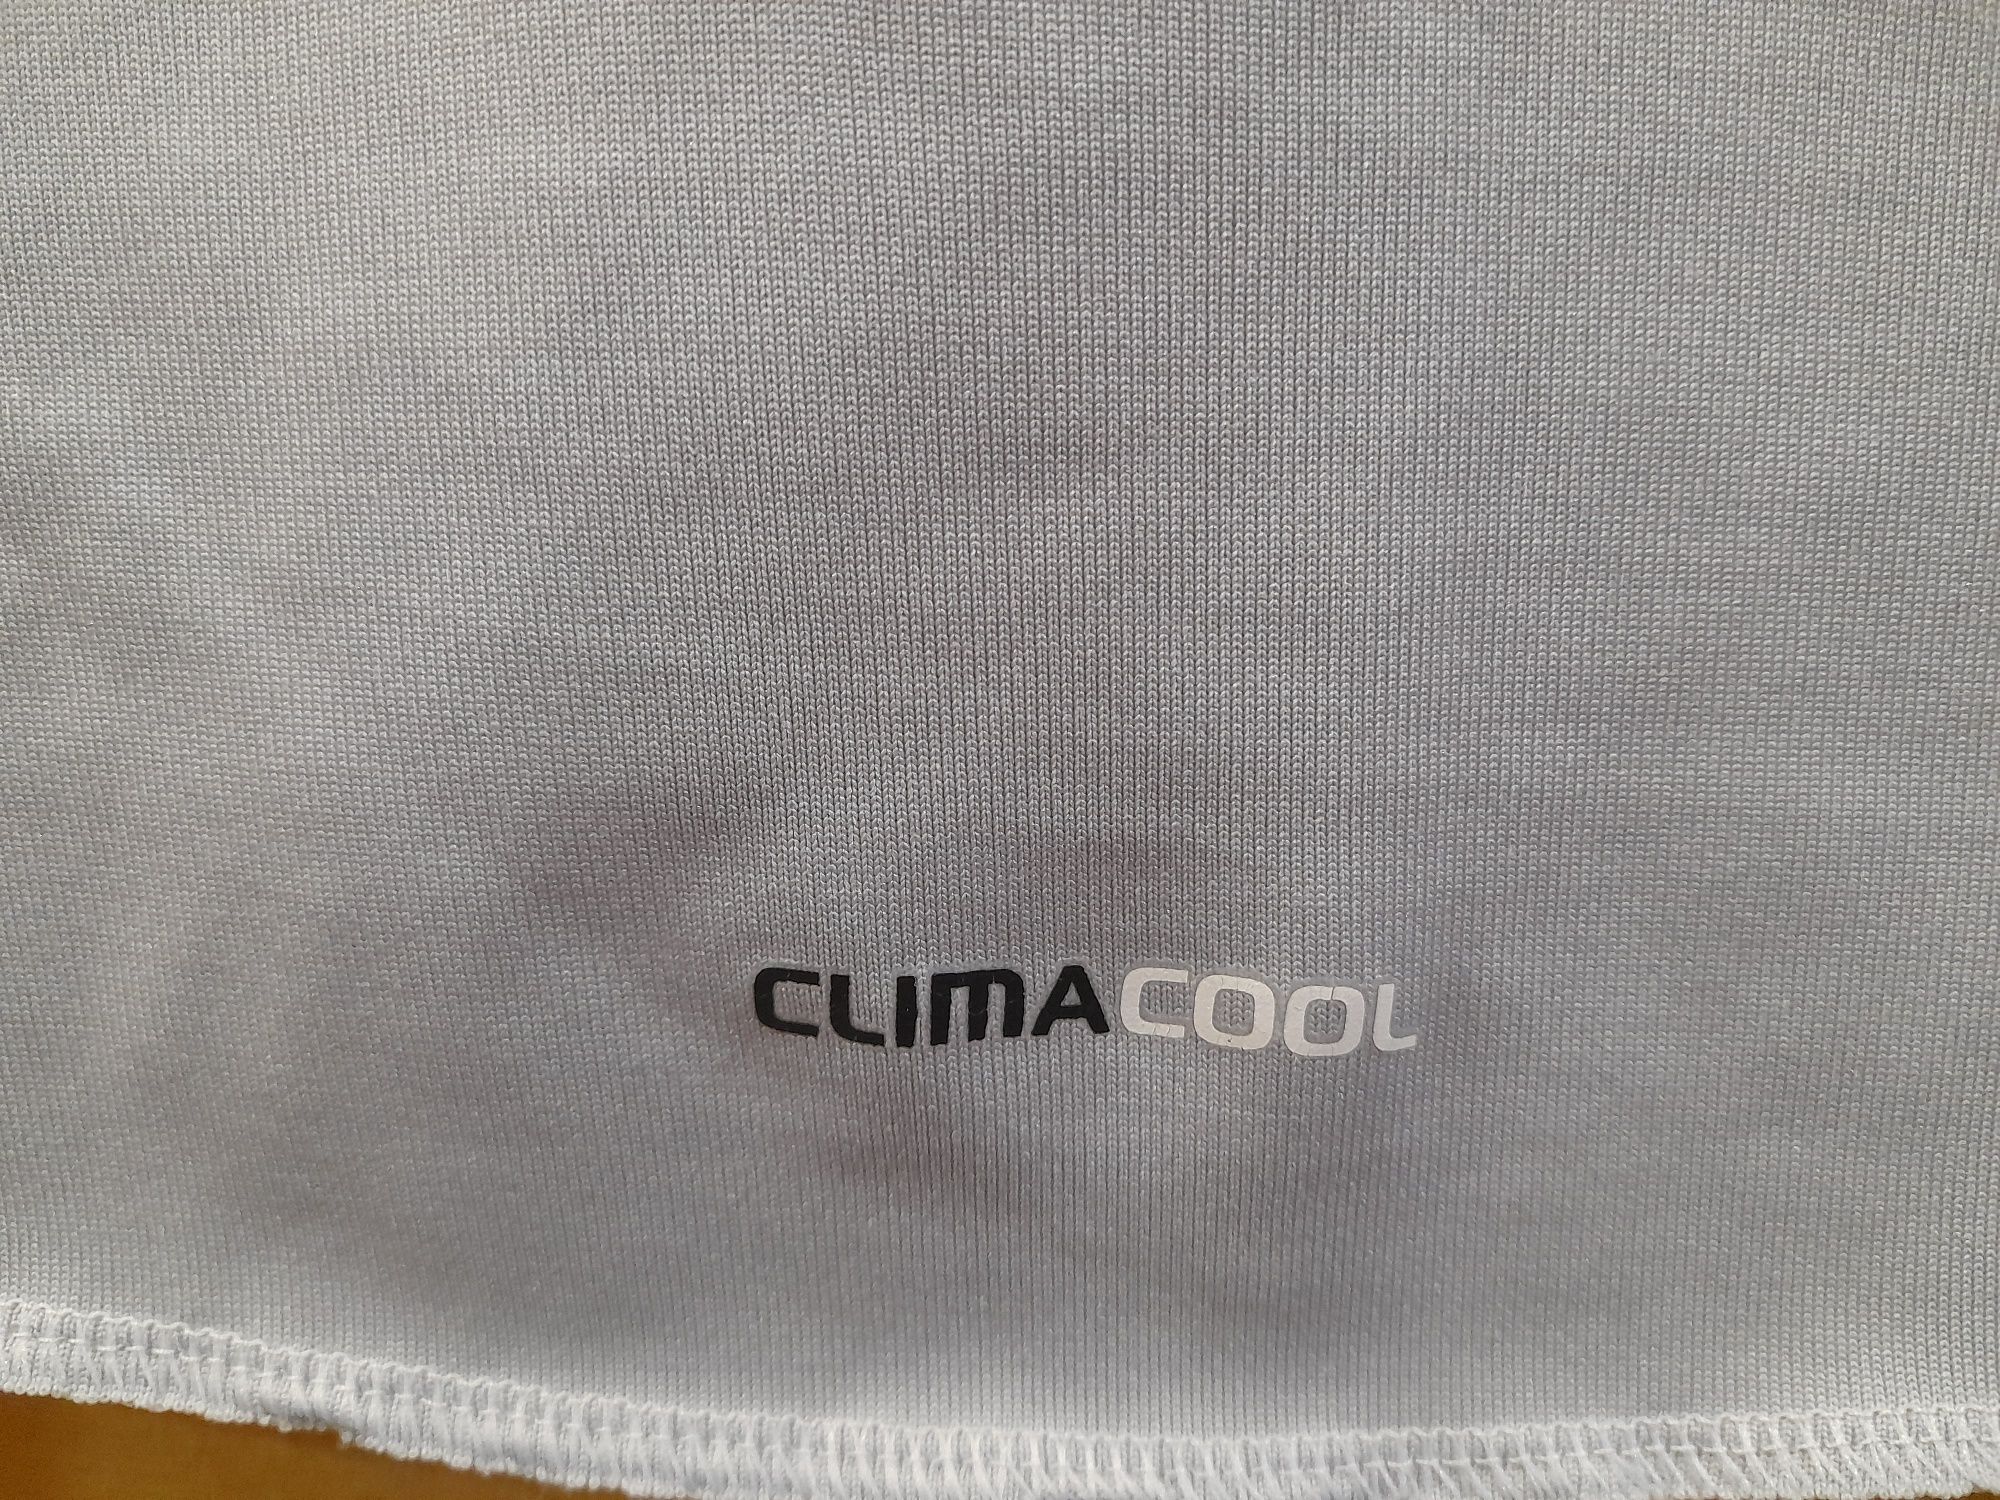 Adidas Climacool XL чоловіча спортивна бігова футболка